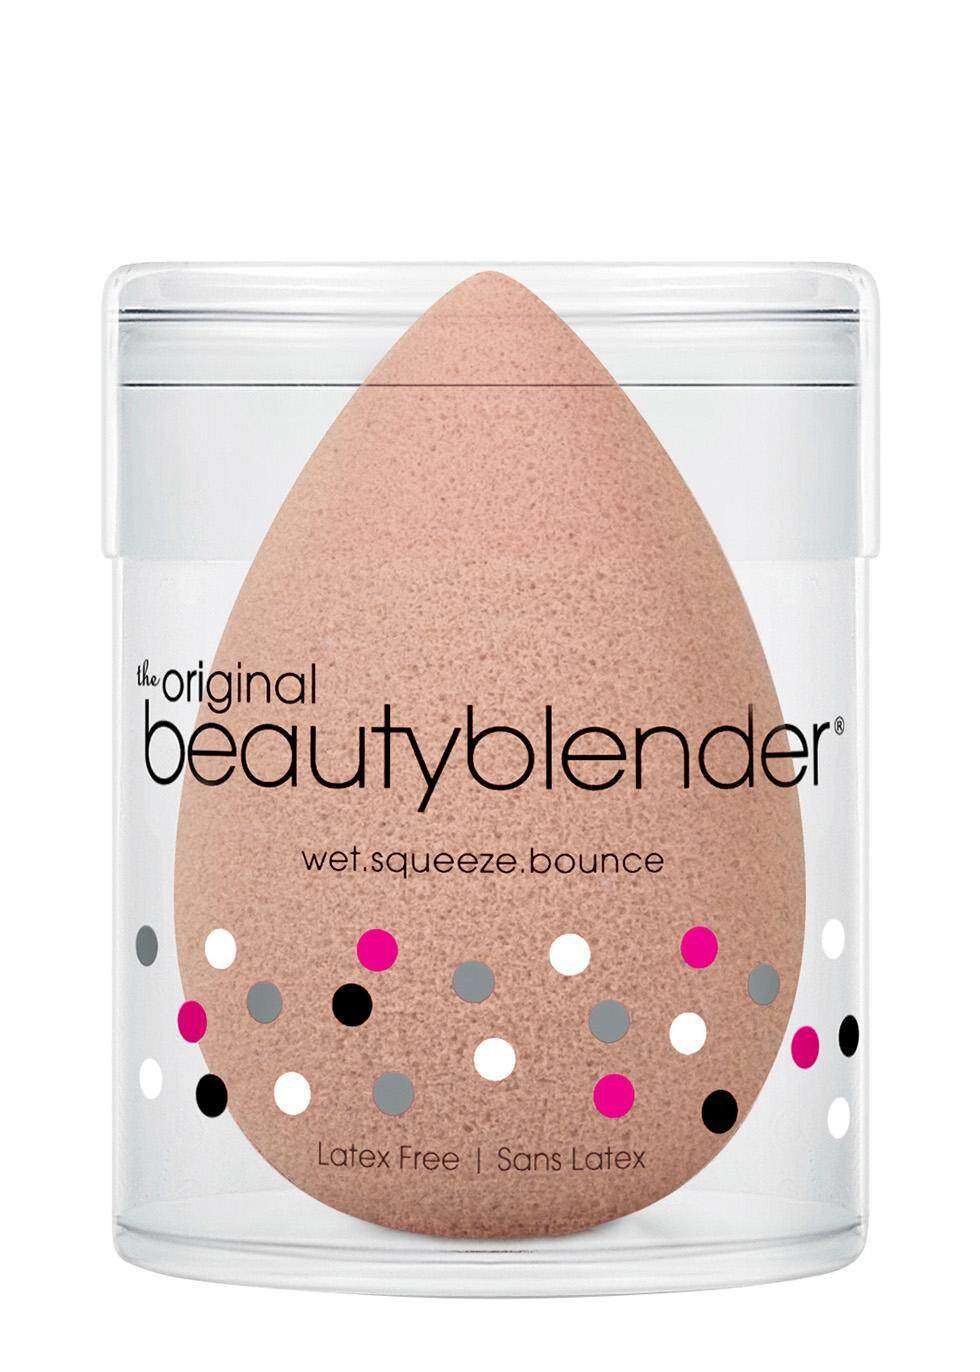 BeautyBlender Original - intl ฟองน้ำแต่งหน้า รูปทรงไข่